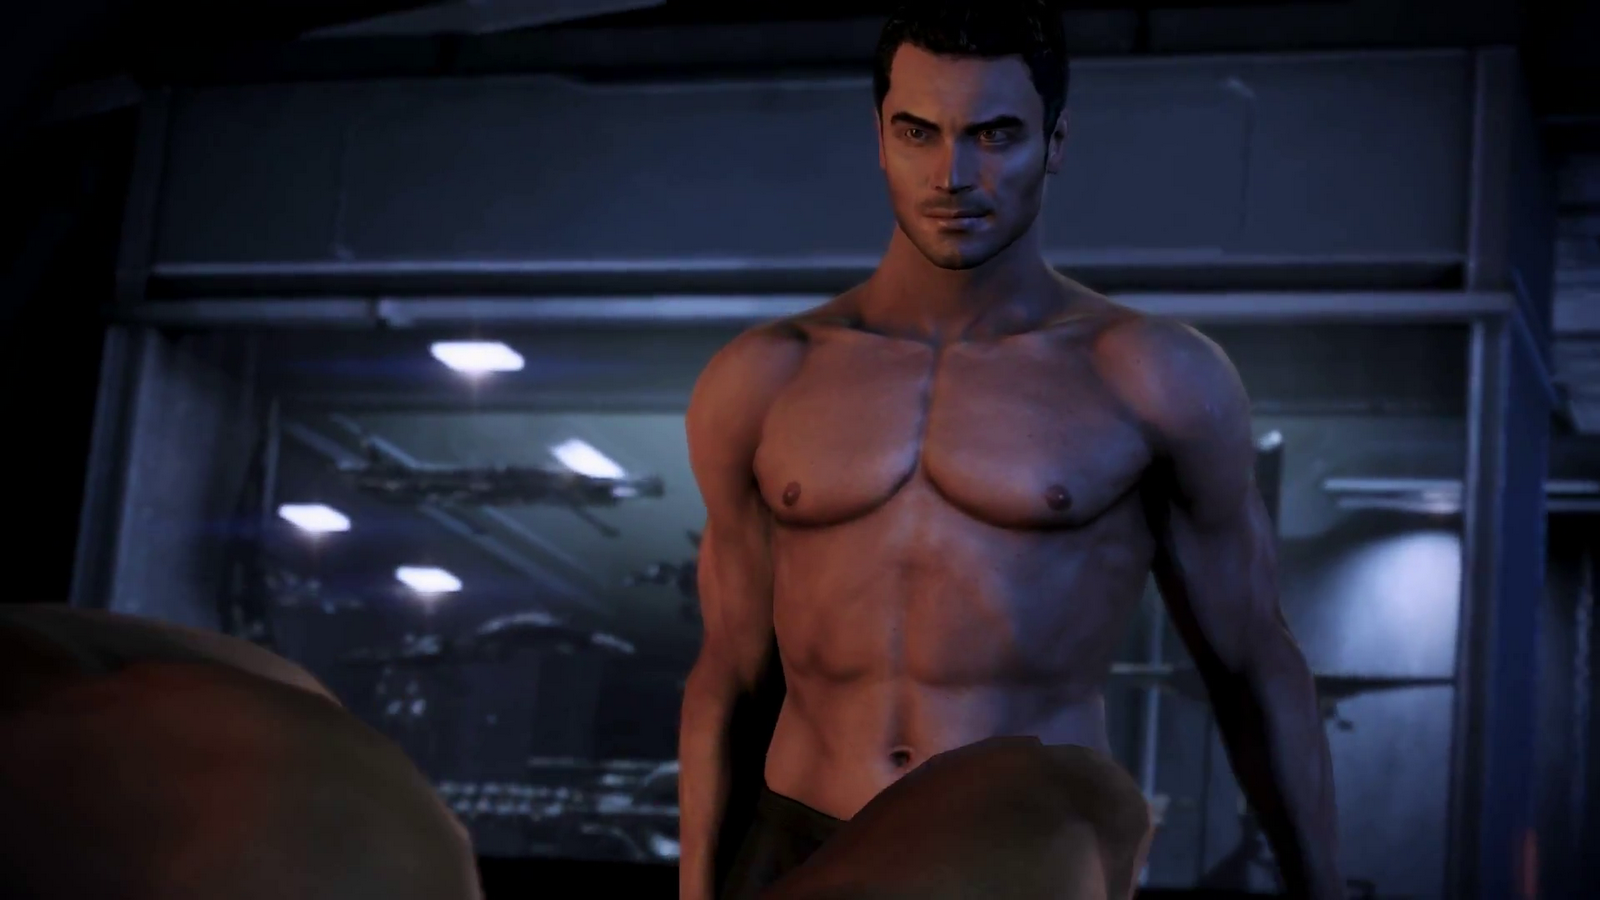 Reaper Mass Effect 3 Gay Porn - Shirtless Superheroes: Mass Effect 3: Shepard & Kaidan Have ...